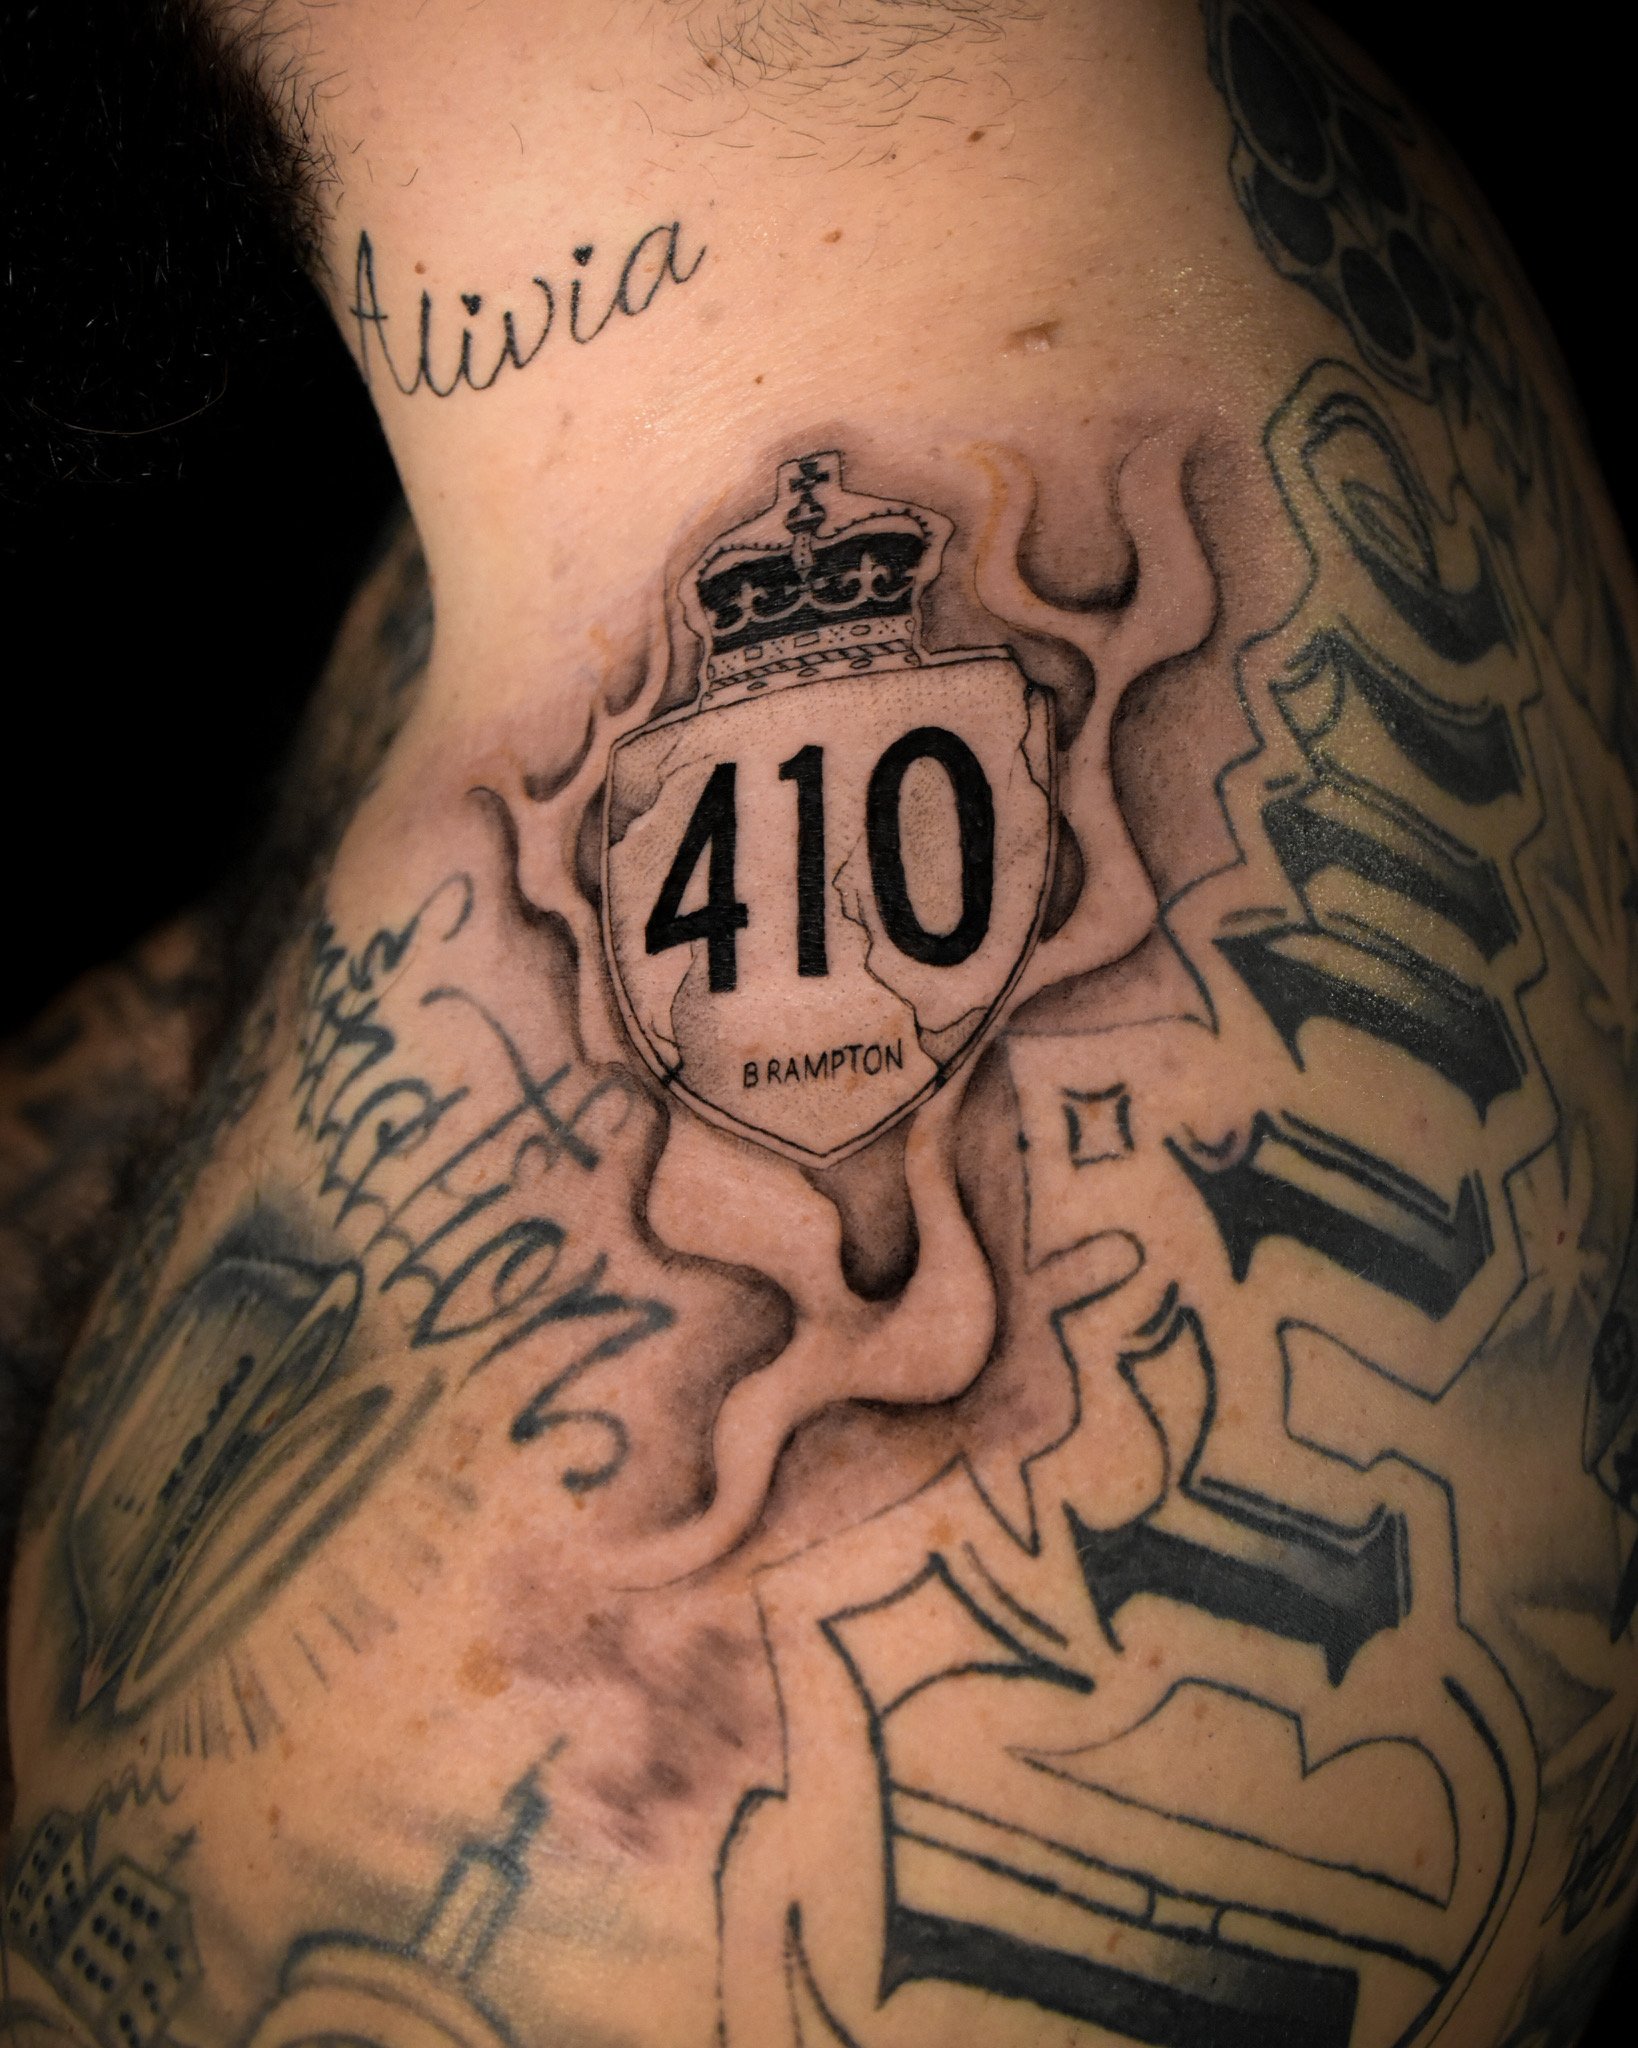 30 Street Sign Tattoo Ideas For Men  Navigational Designs  Street tattoo  Sleeve tattoos Tattoos